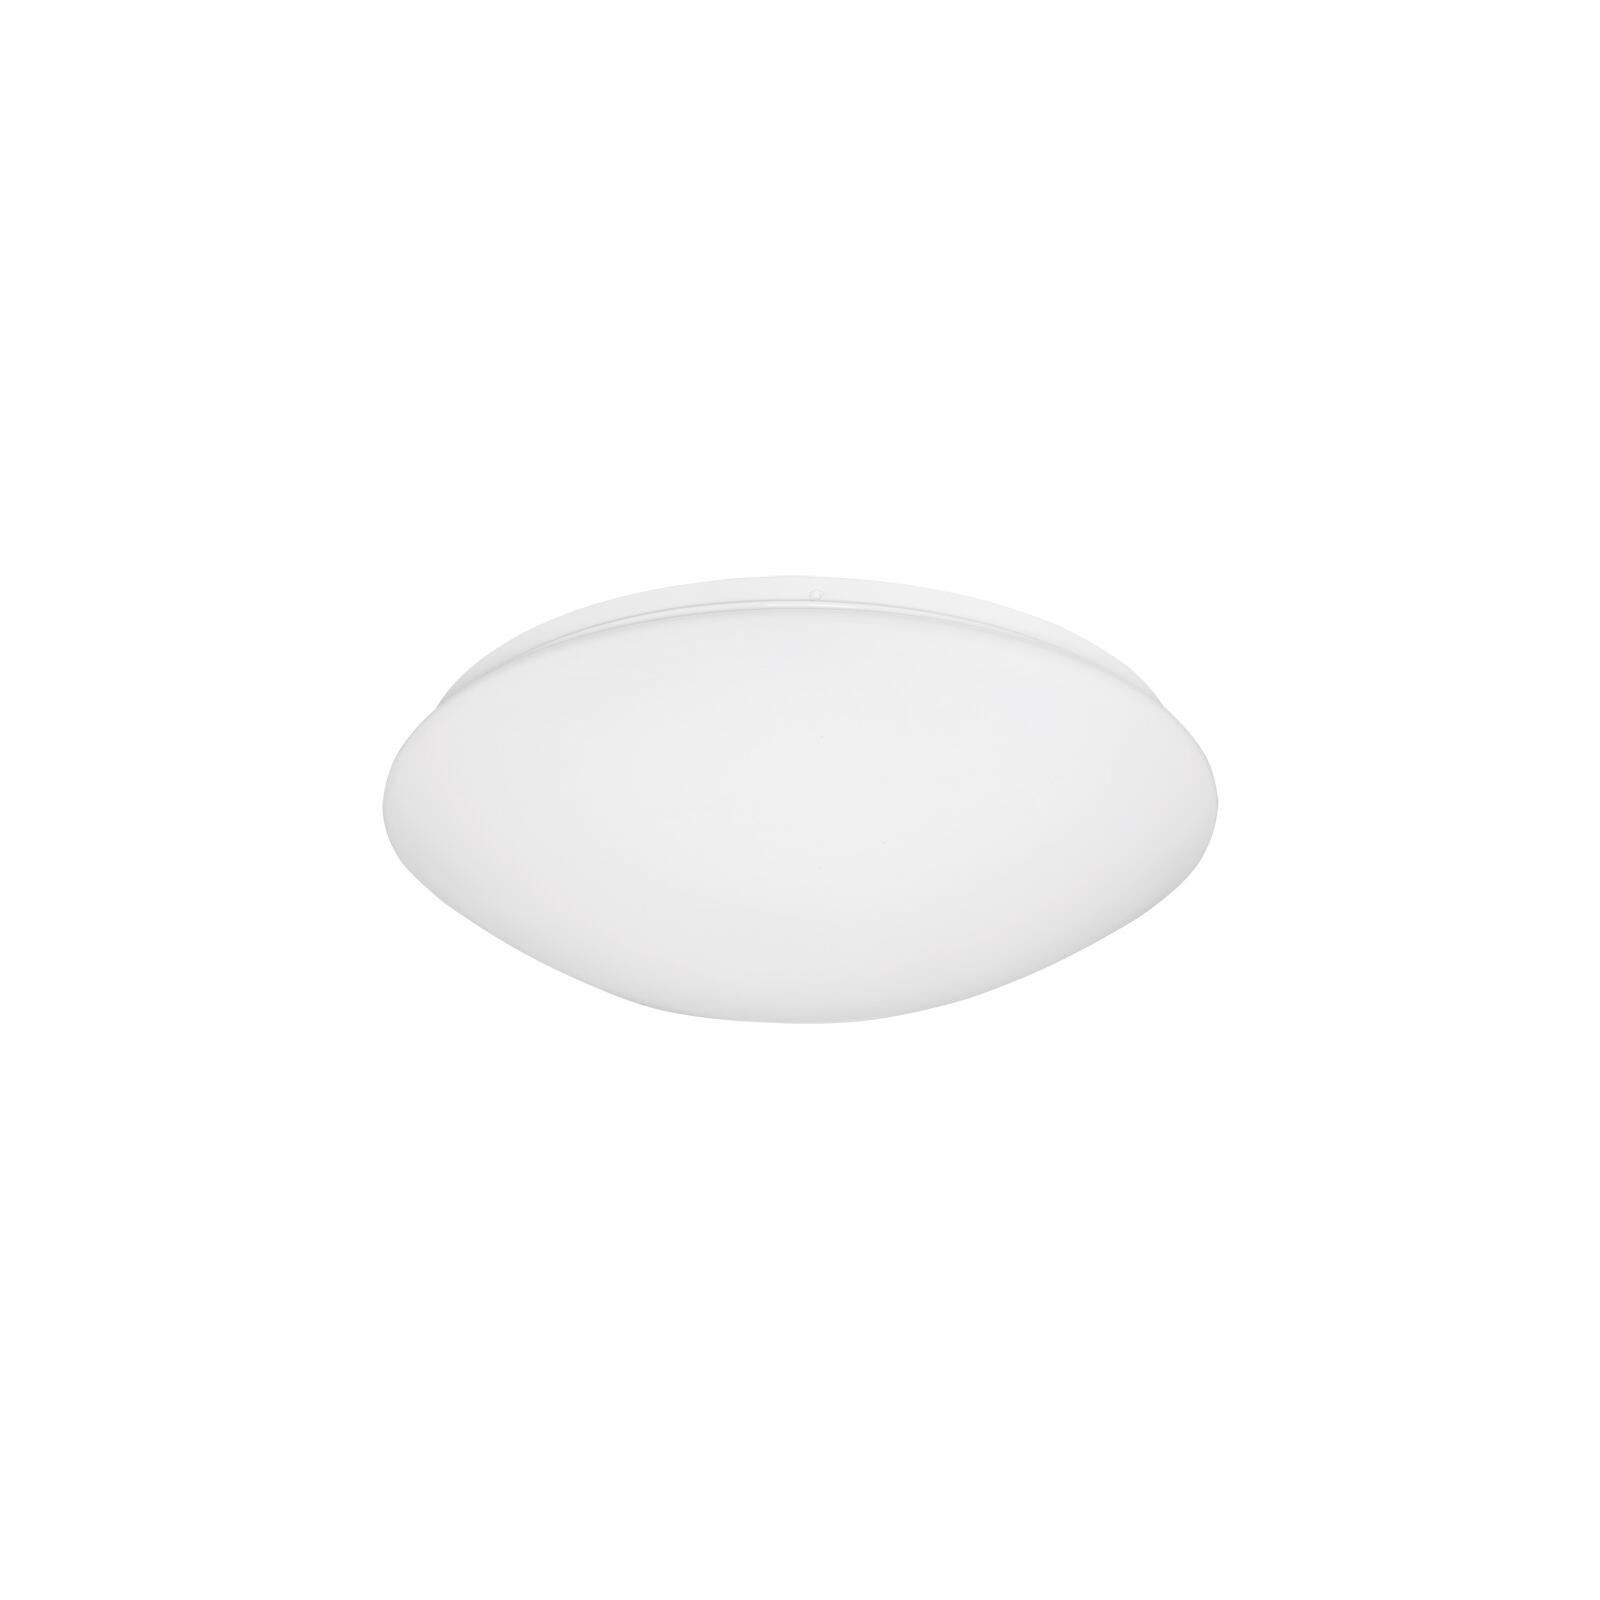 Deckenschale Kunststoff, opal weiß 39 cm - Lampen & Leuchten Onlineshop | Deckenlampen